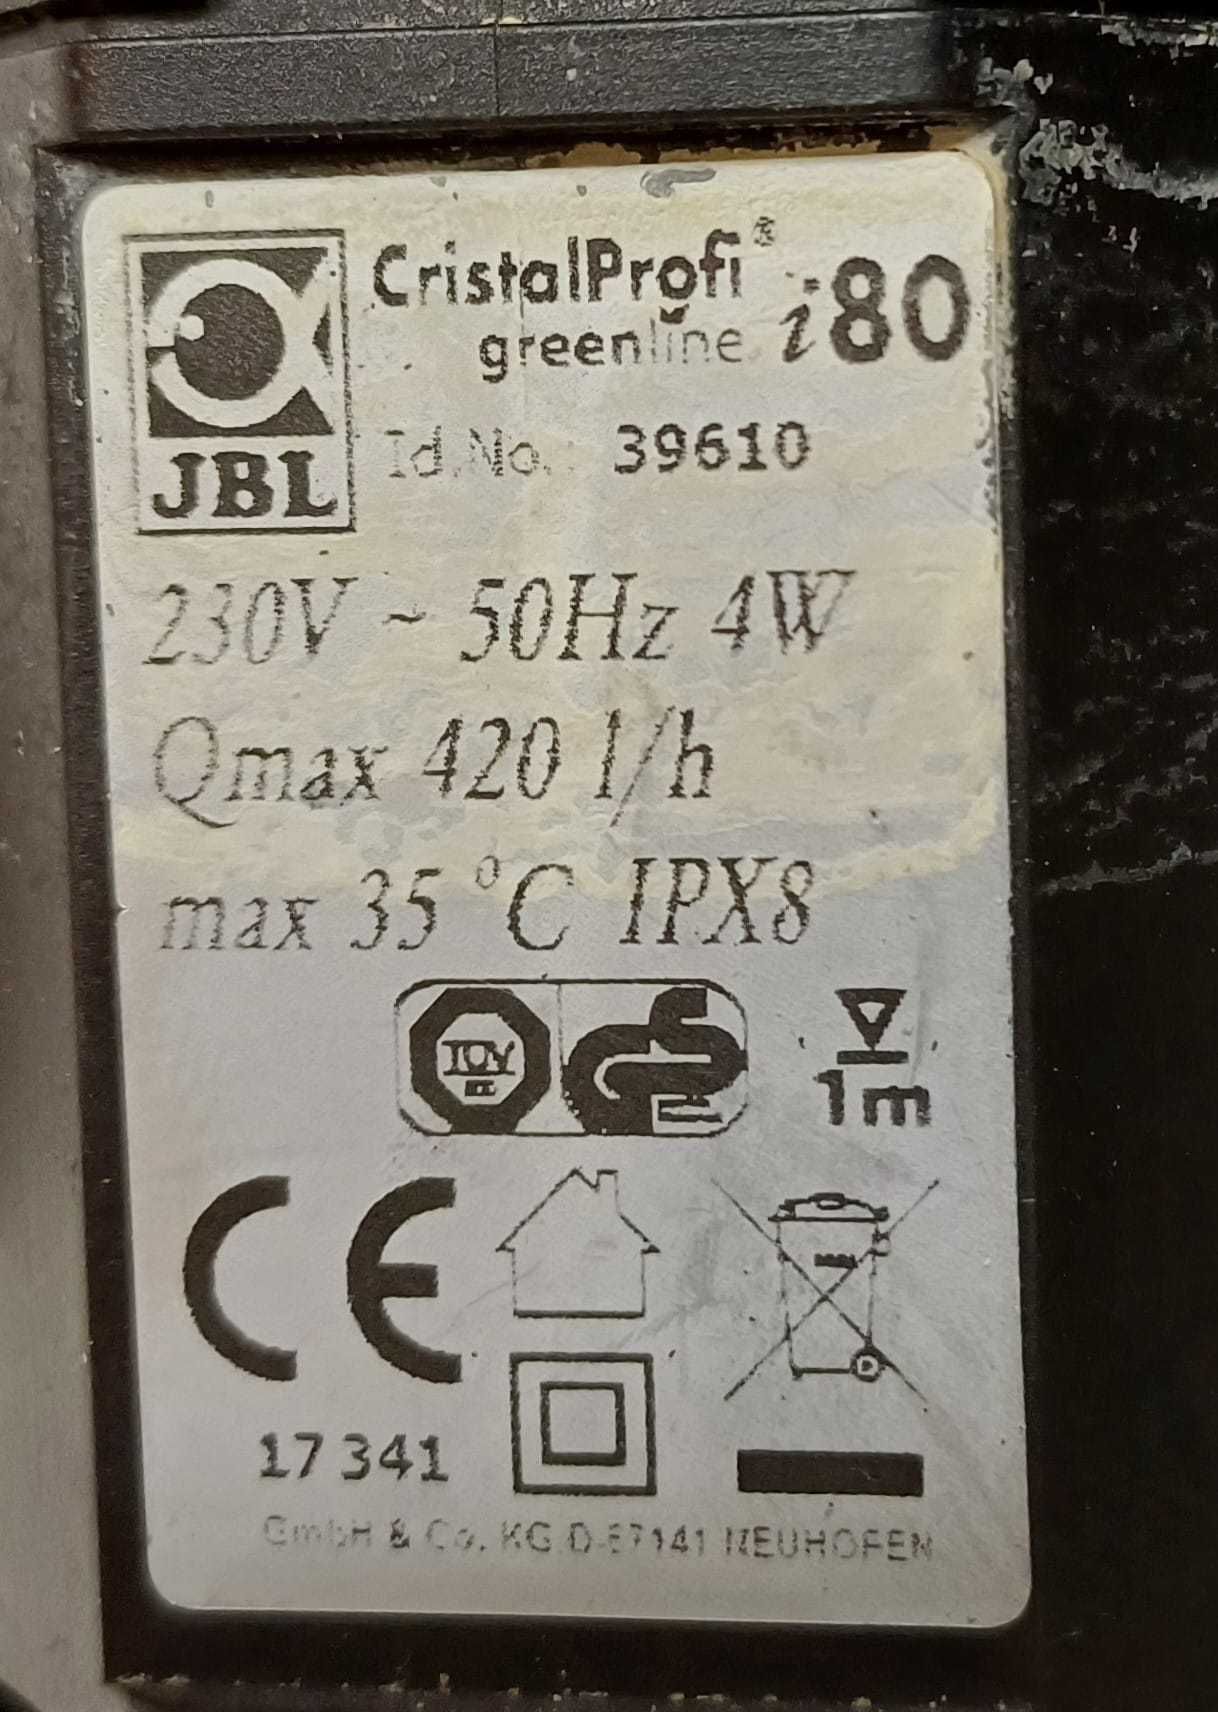 Filtr wewnętrzny JBL CristalProfi i80